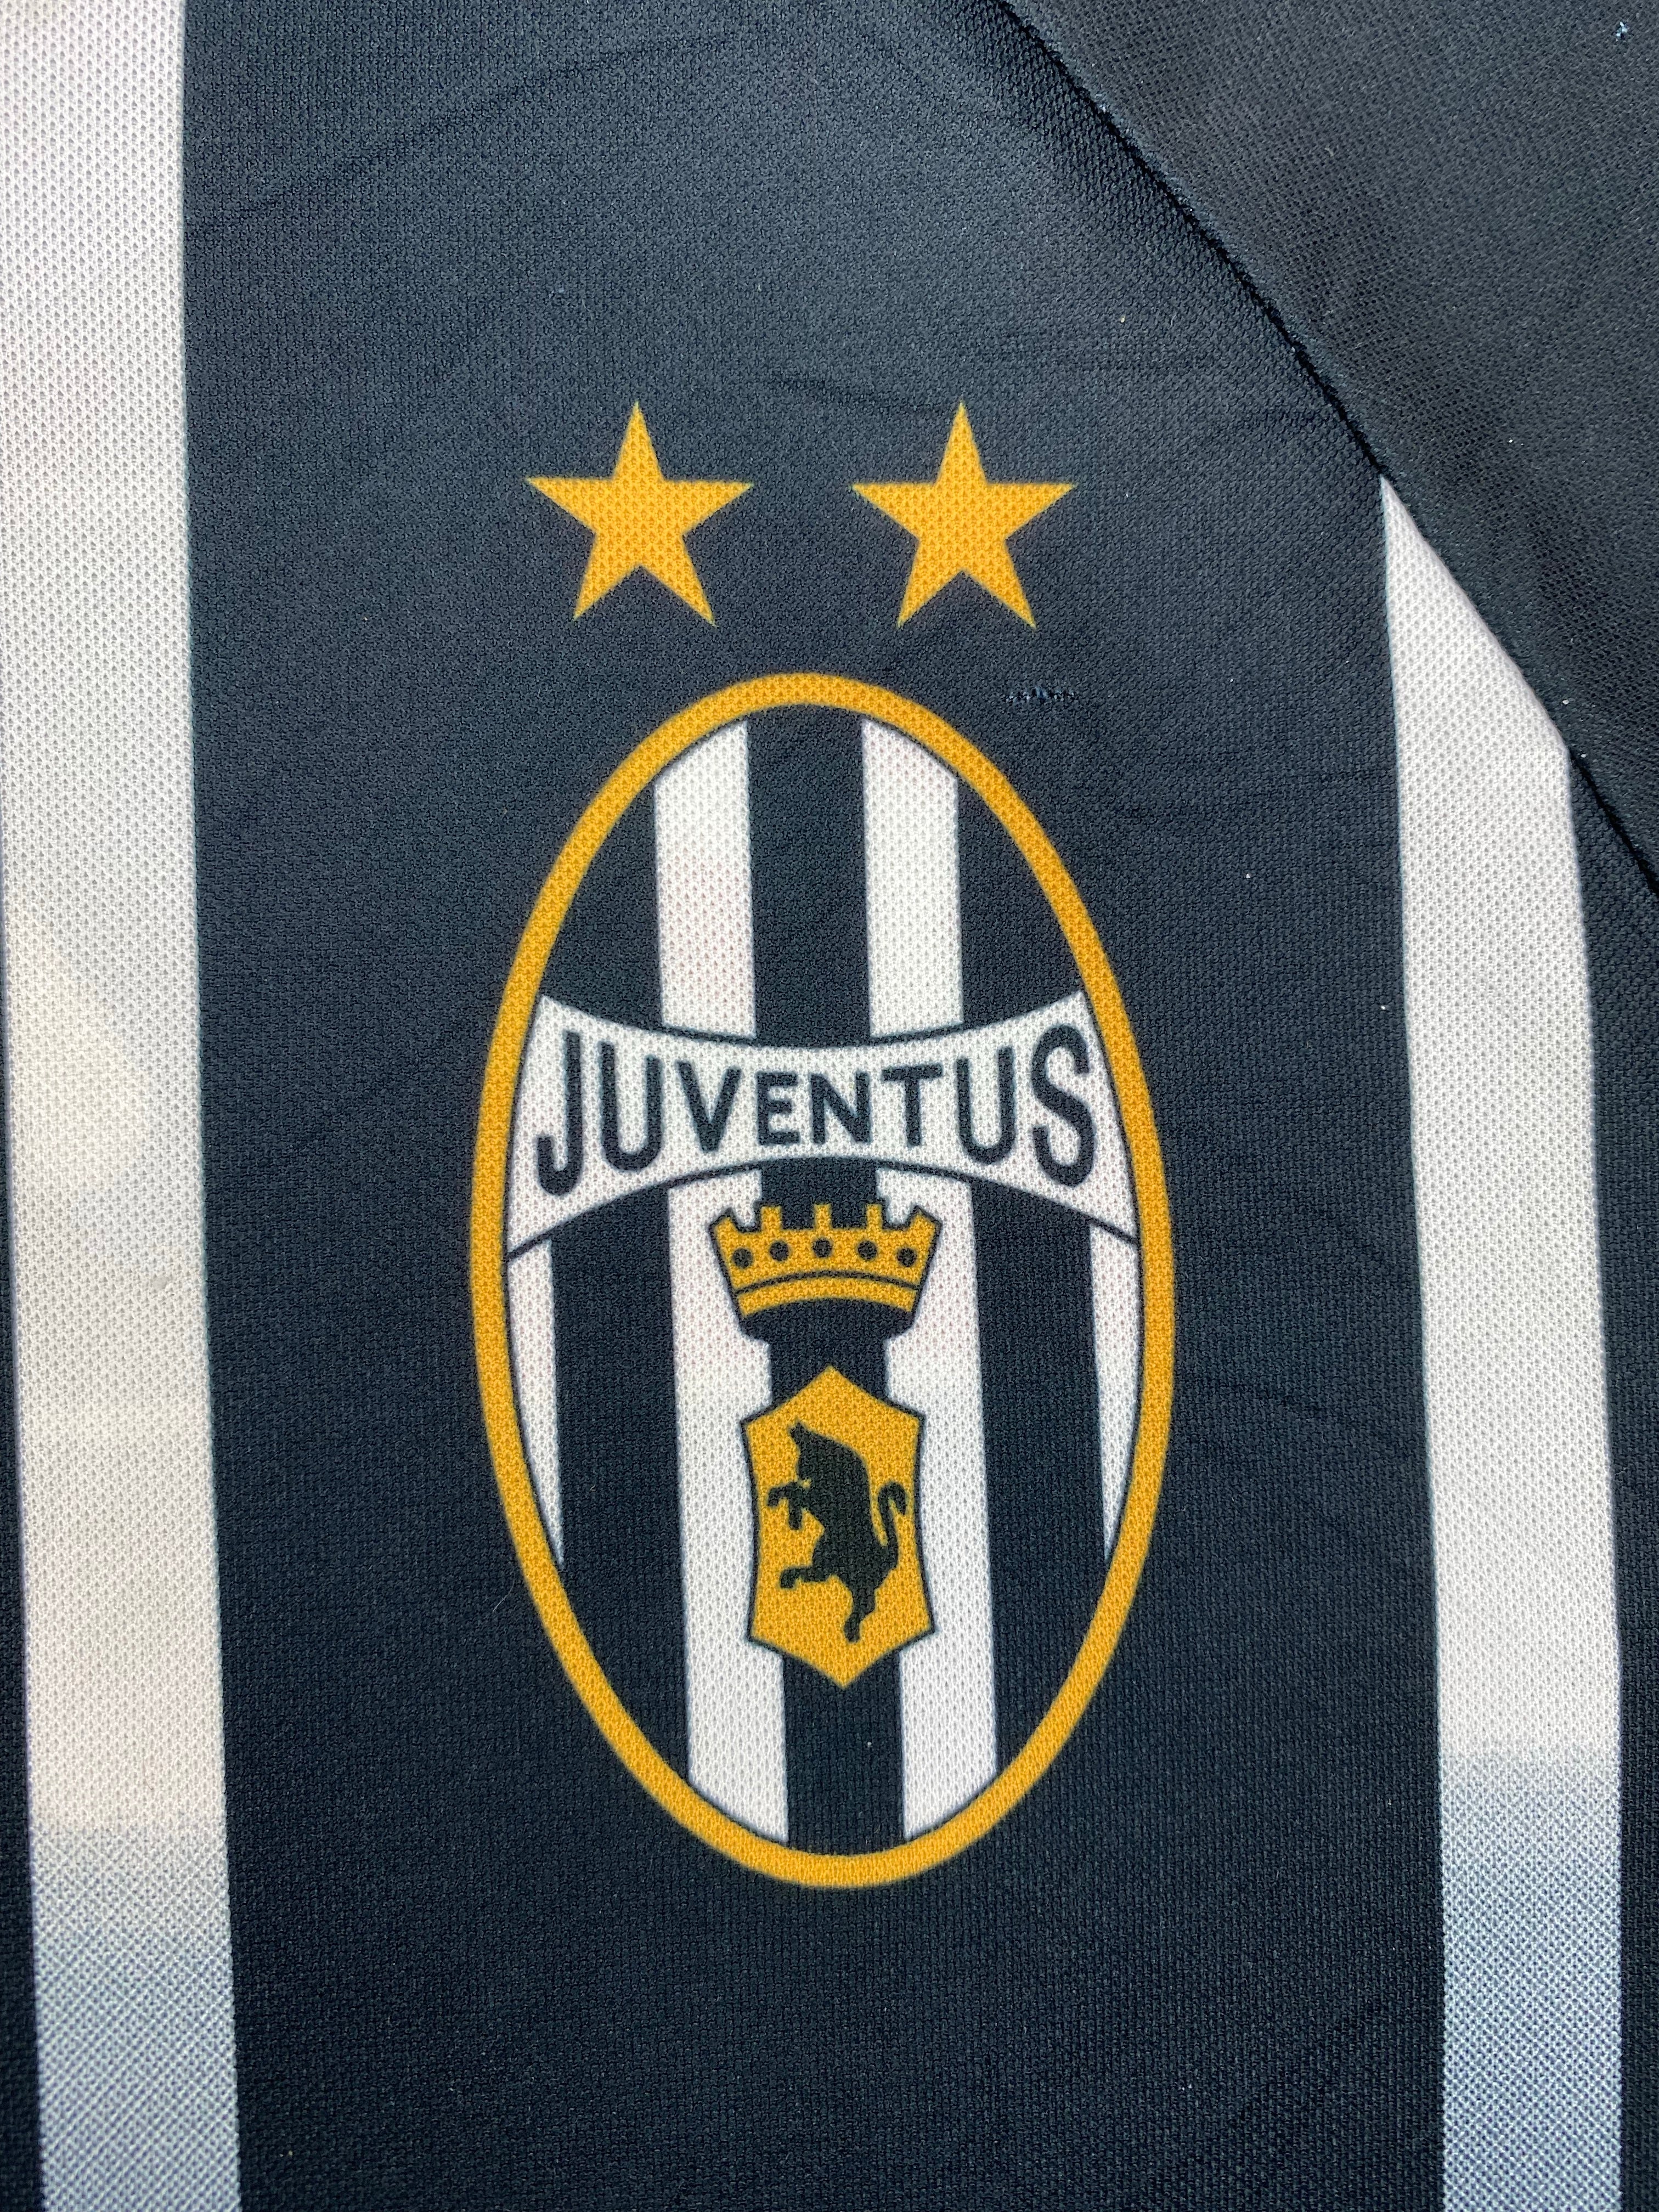 2000/01 Juventus Training Shirt (L) 7.5/10